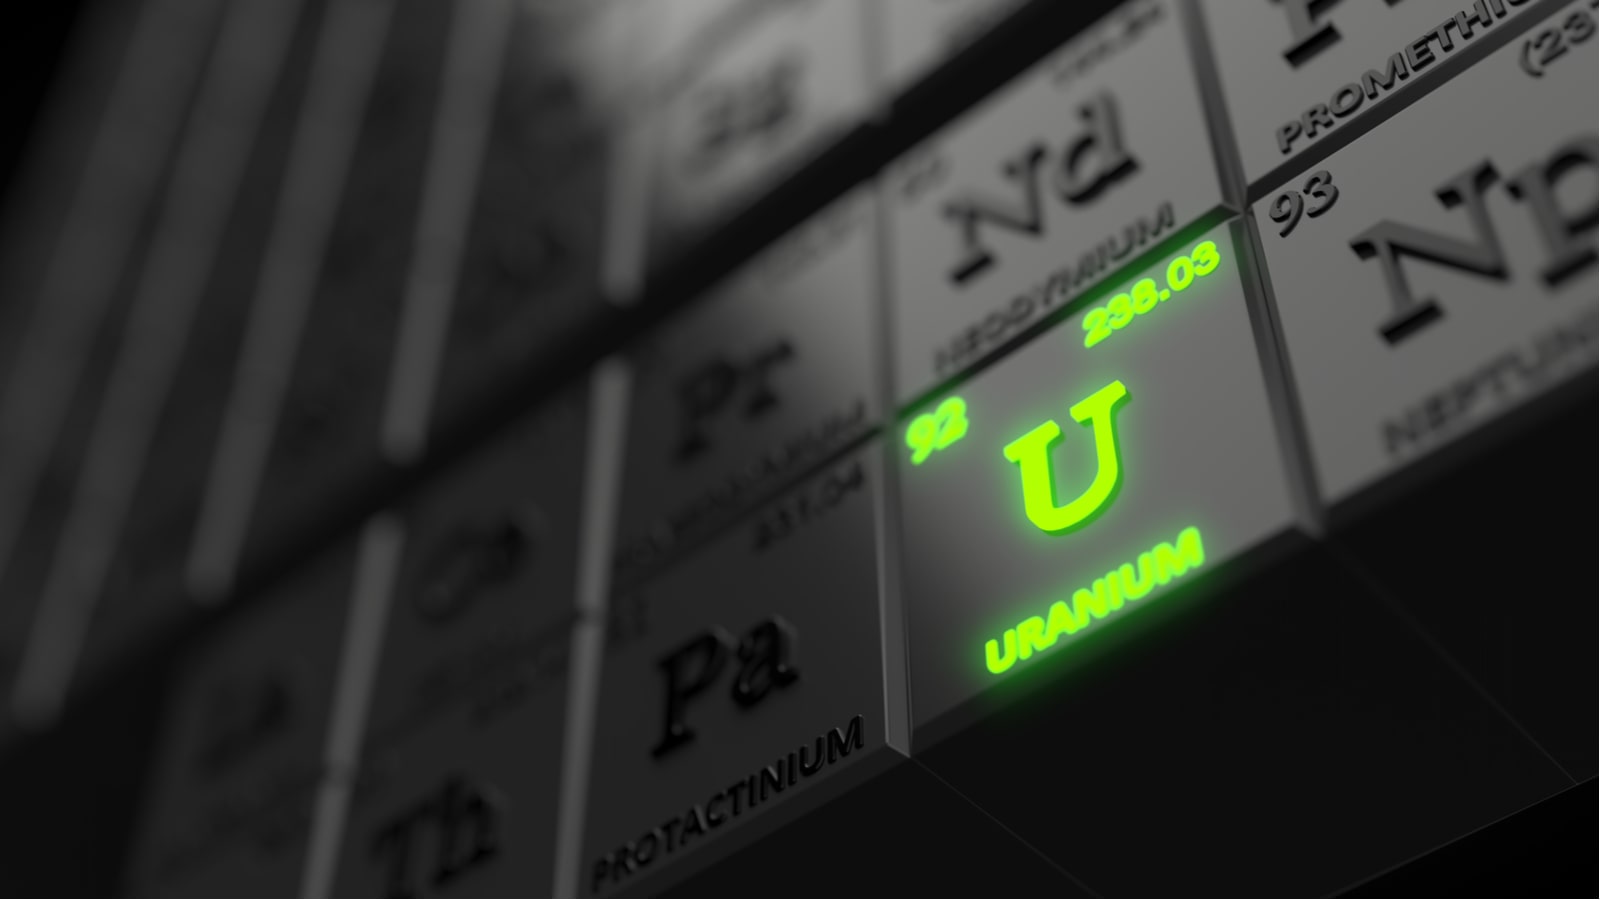 Fond för uran gynnas av att Kazakhstan minskar sin produktion